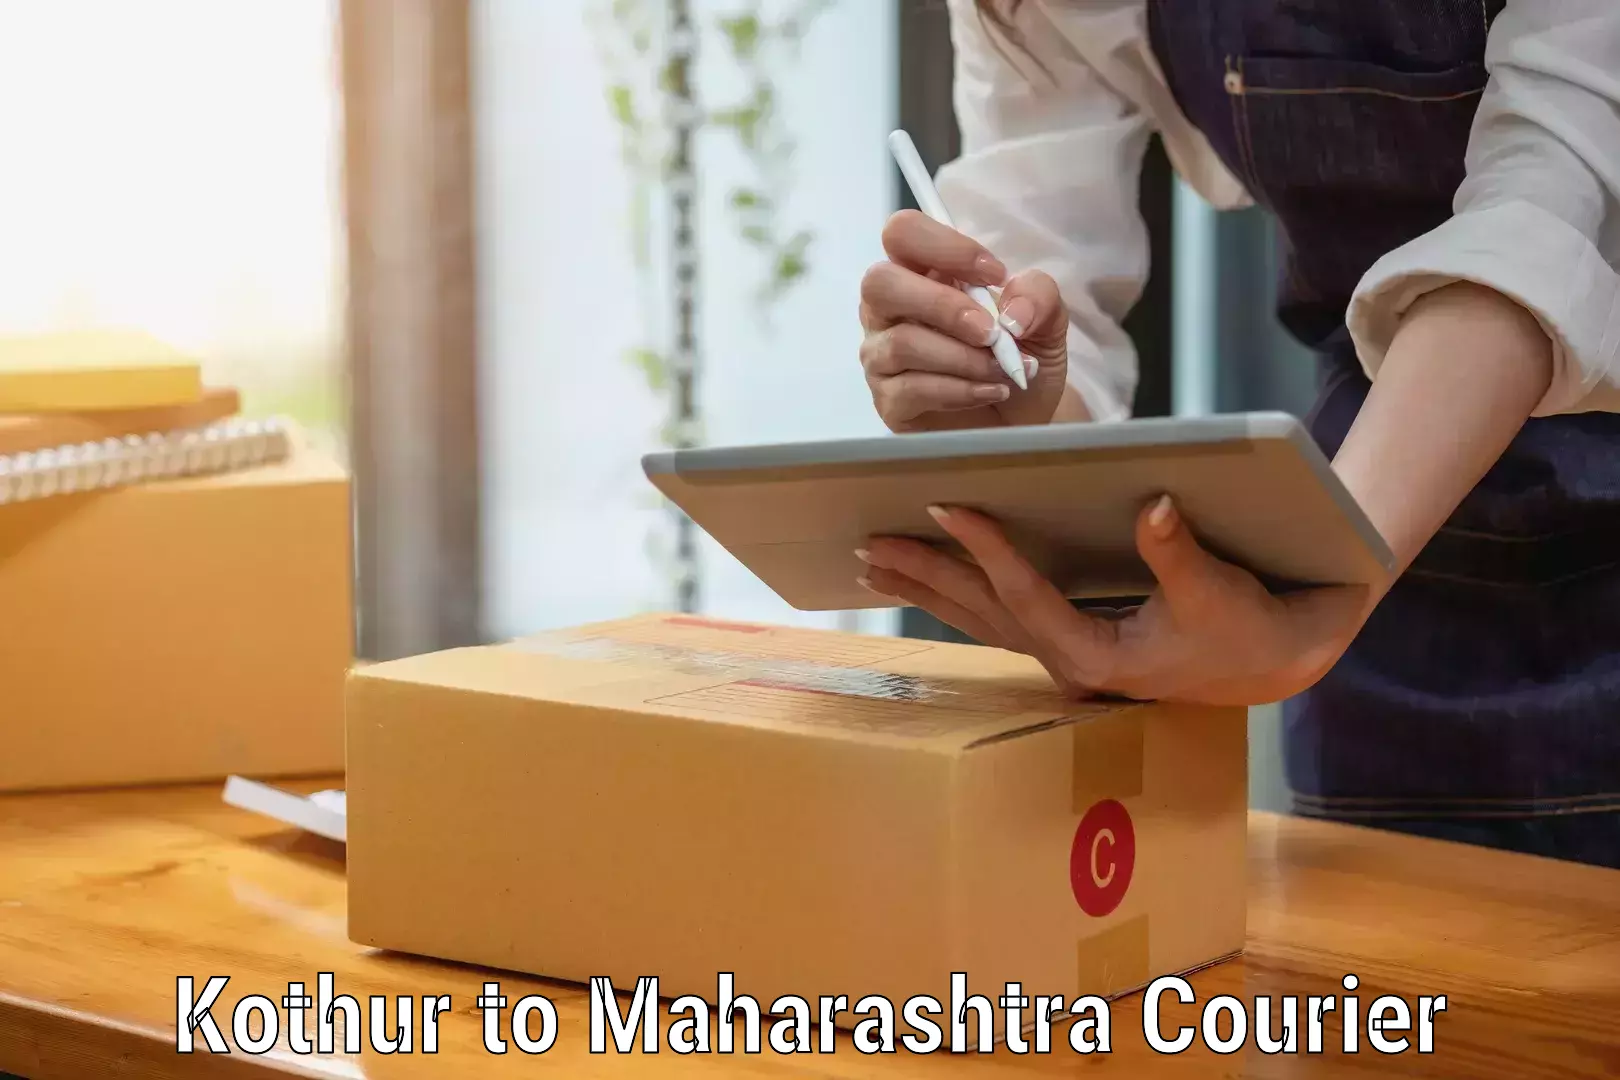 Professional furniture movers Kothur to Maharashtra